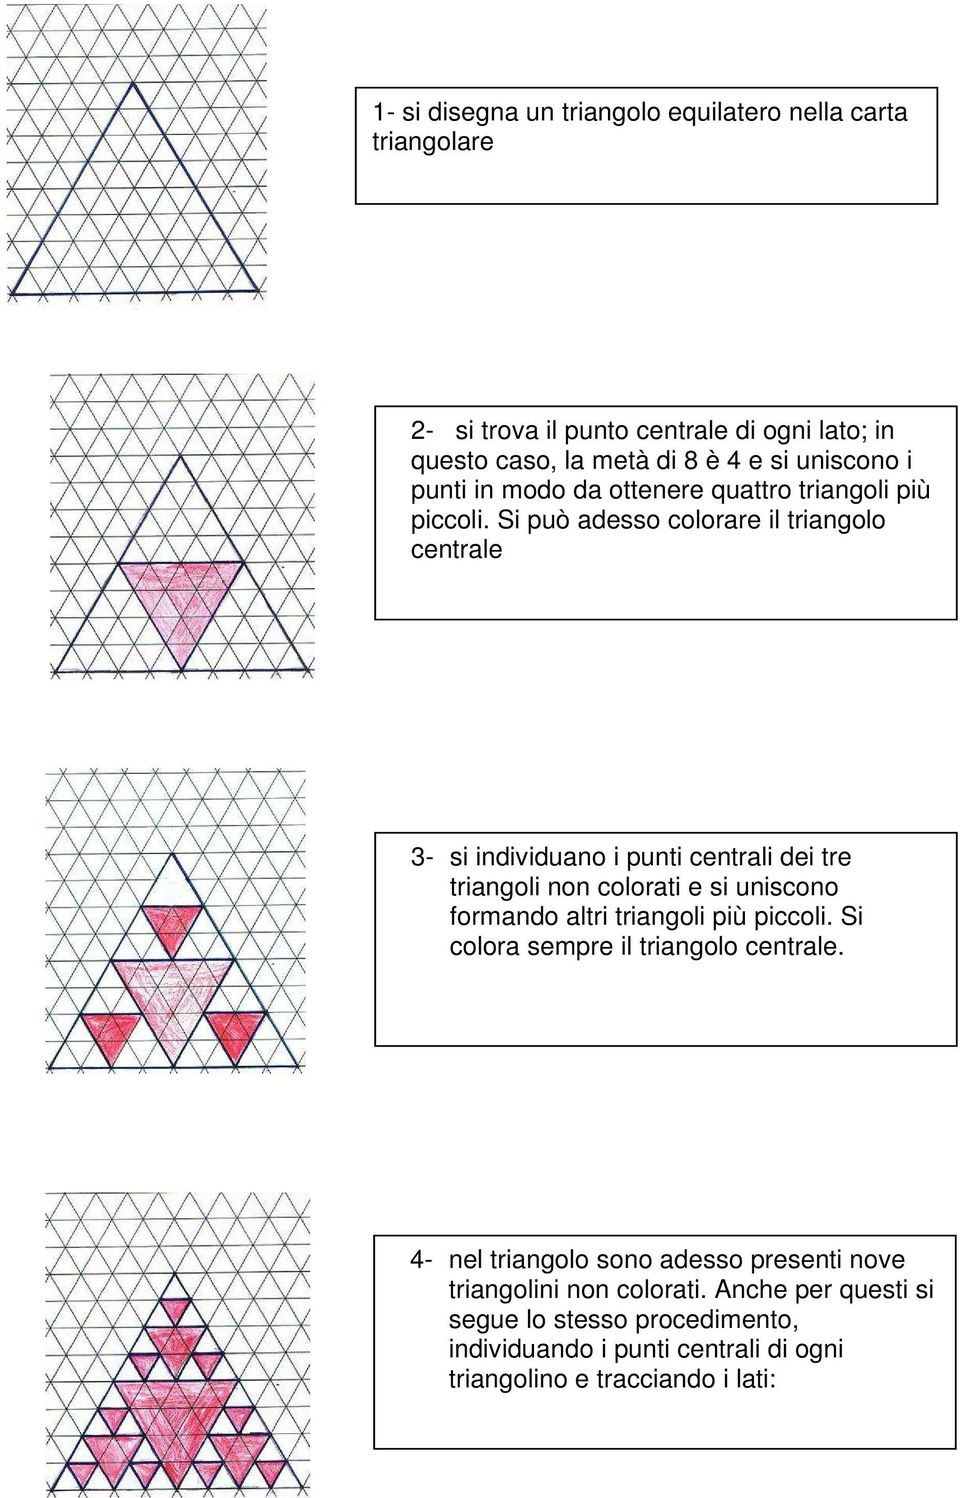 Si può adesso colorare il triangolo centrale 3- si individuano i punti centrali dei tre triangoli non colorati e si uniscono formando altri triangoli